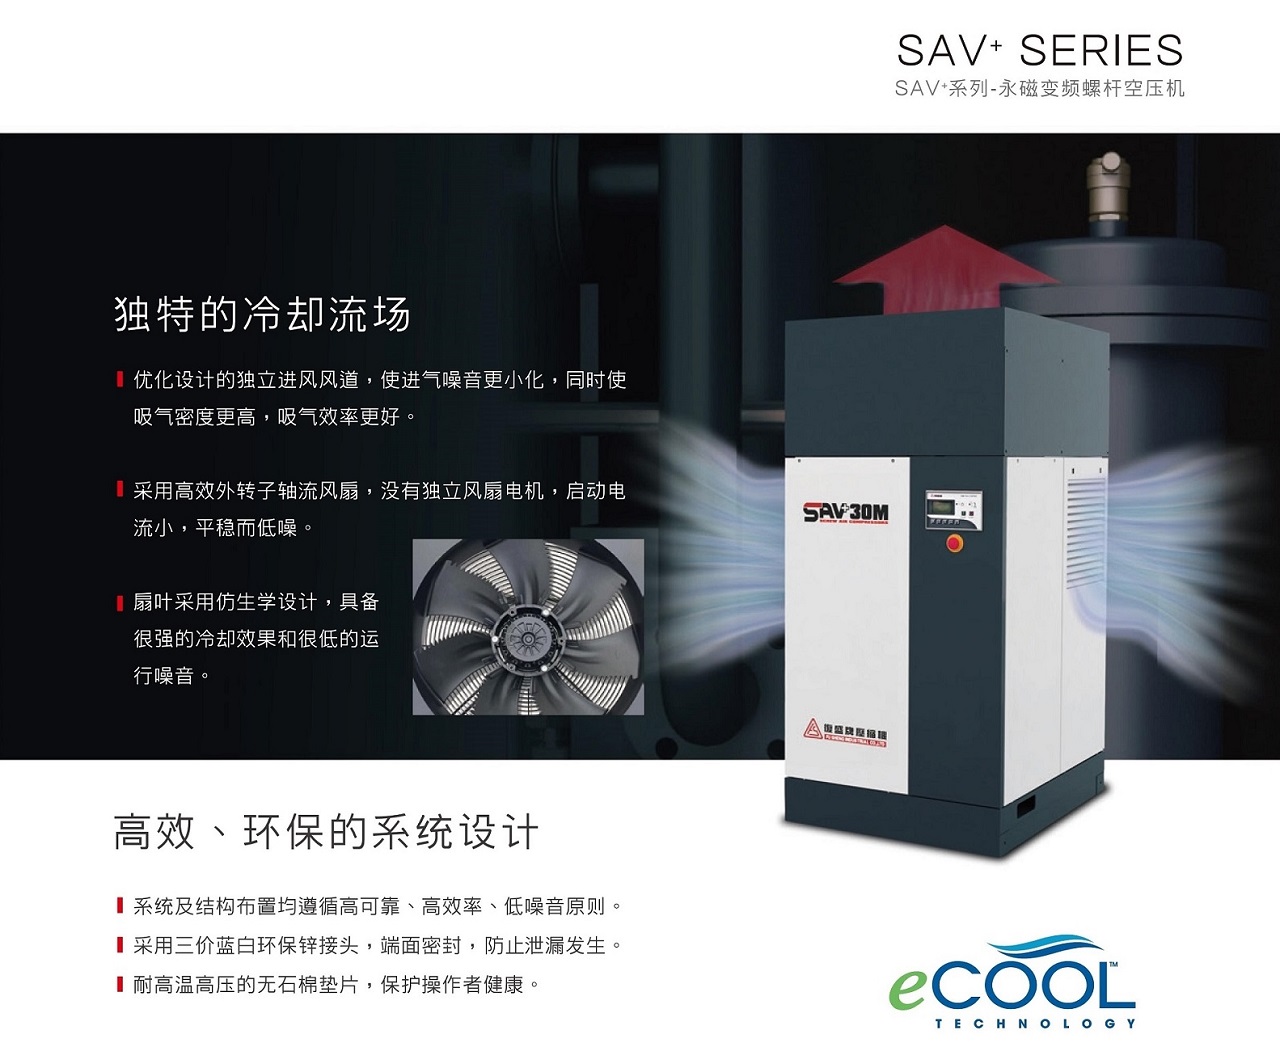 复盛SAV+永磁变频空压机高效、环保设计.jpg